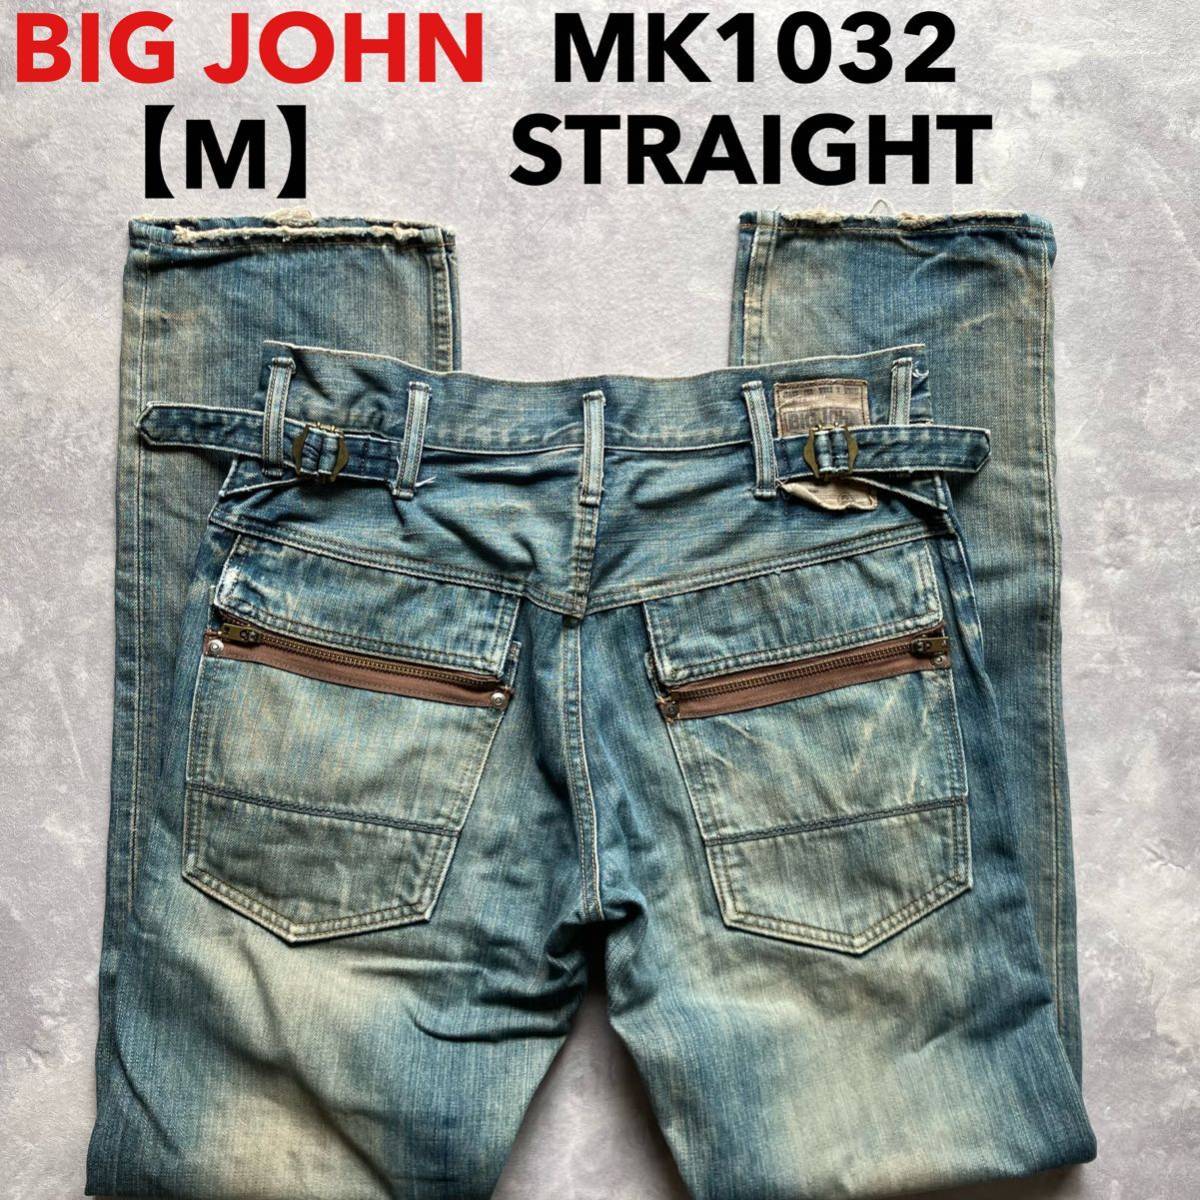  быстрое решение размер надпись M Big John BIGJOHN б/у обработка MK1032 хлопок 100% Denim кромка цепь стежок specification распорка молния fly 